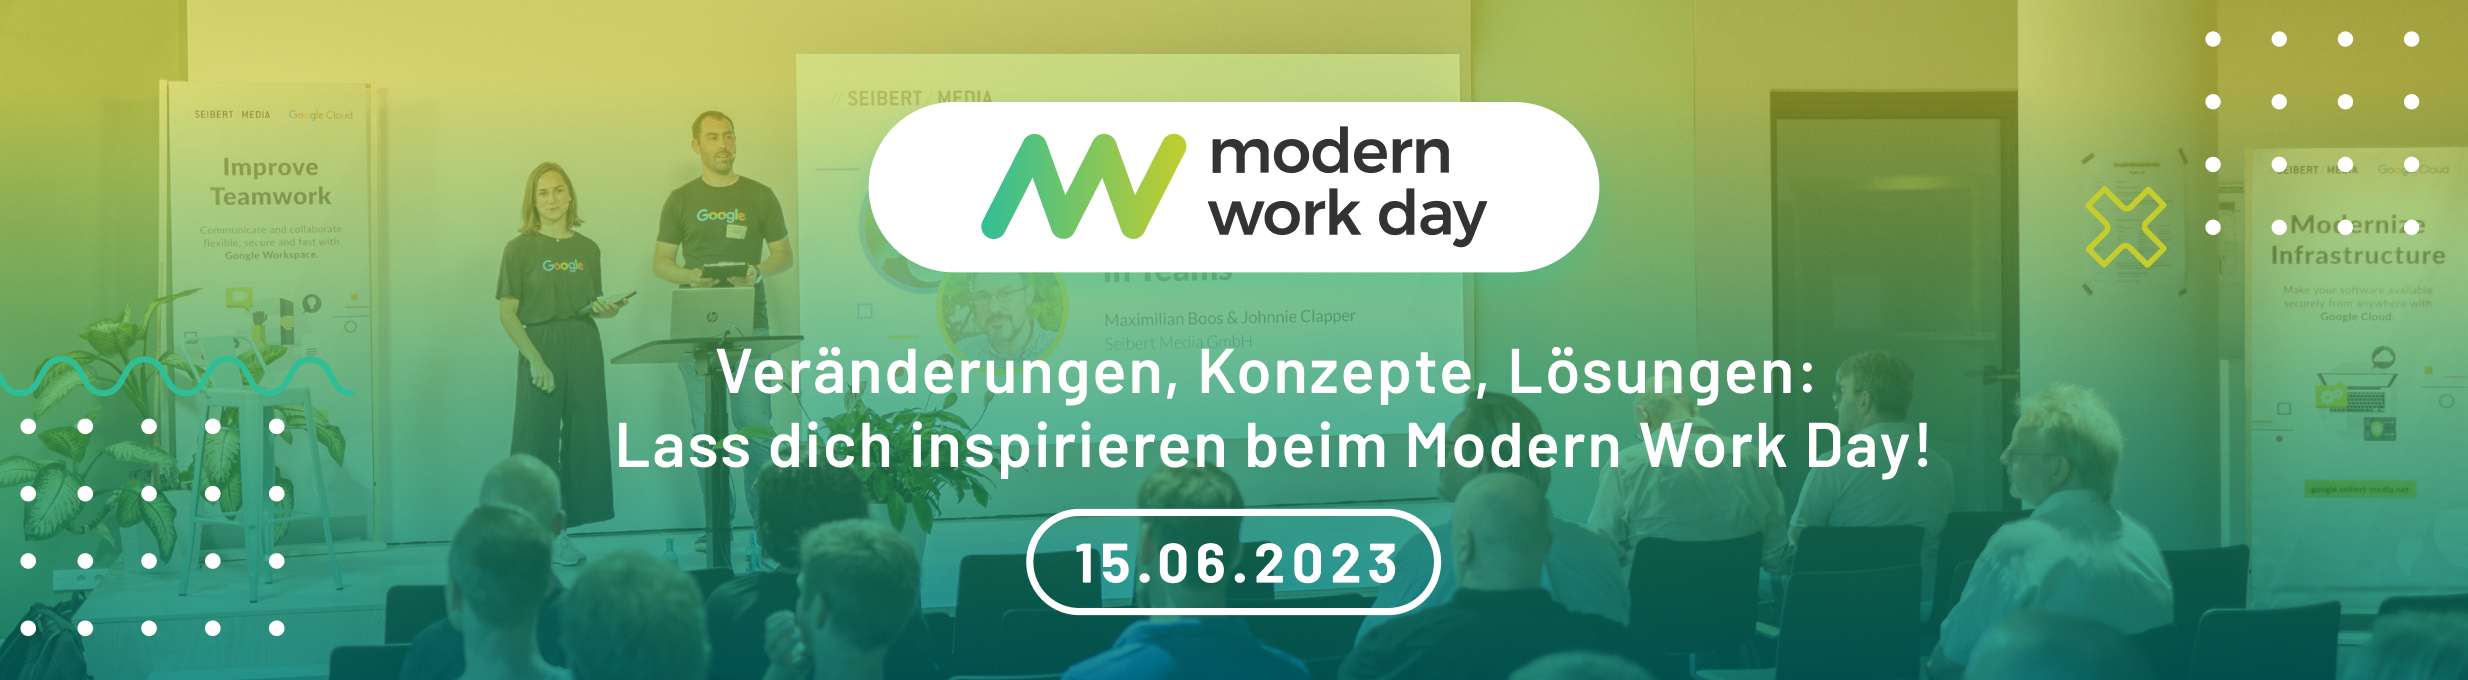 Modern Work Day digitale Transformation der Arbeitswelt